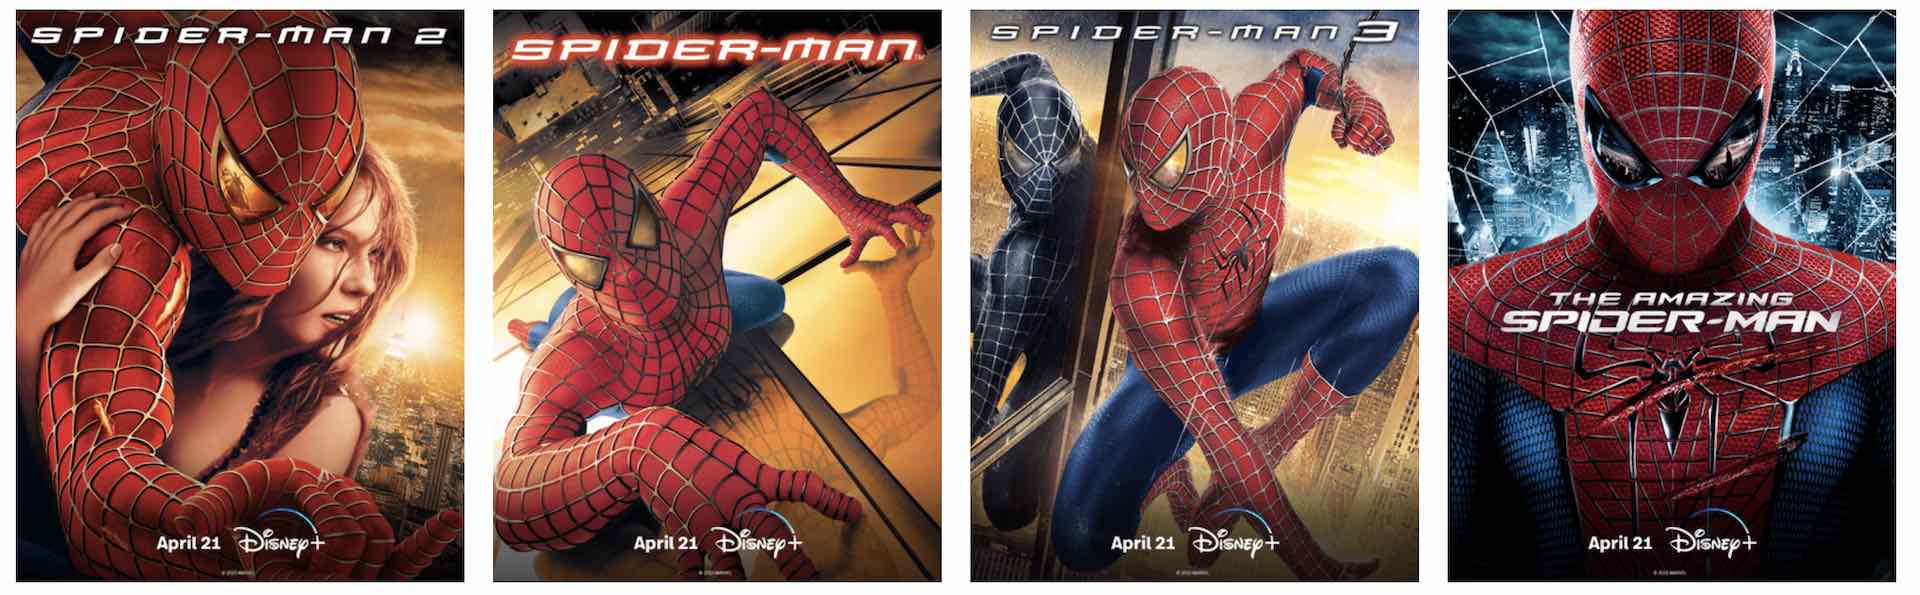 Filmes do Homem-Aranha chegarão ao Disney+